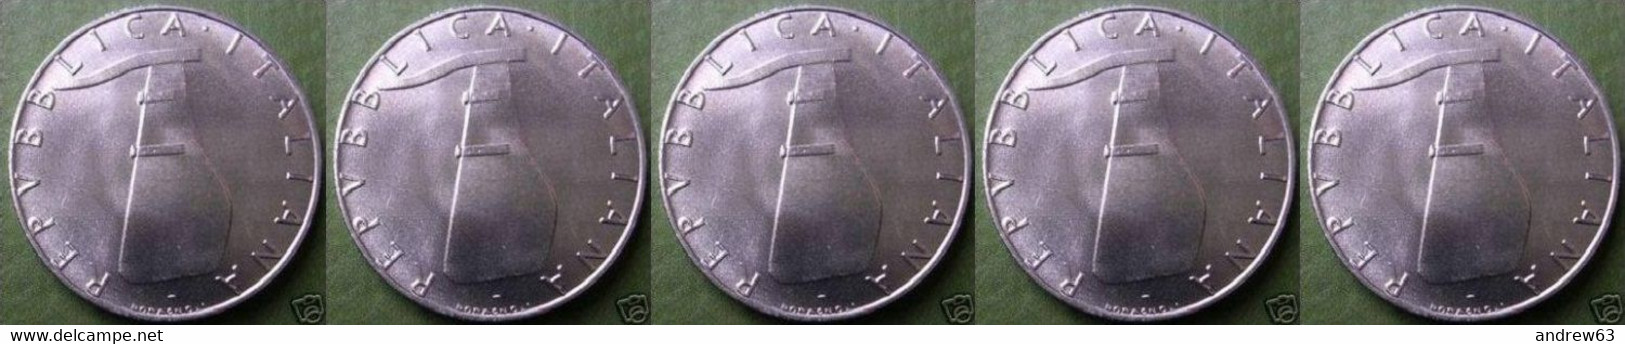 ITALIA - Lire 5 1973 - FDC/Unc Da Rotolino/from Roll 5 Monete/5 Coins - 5 Lire